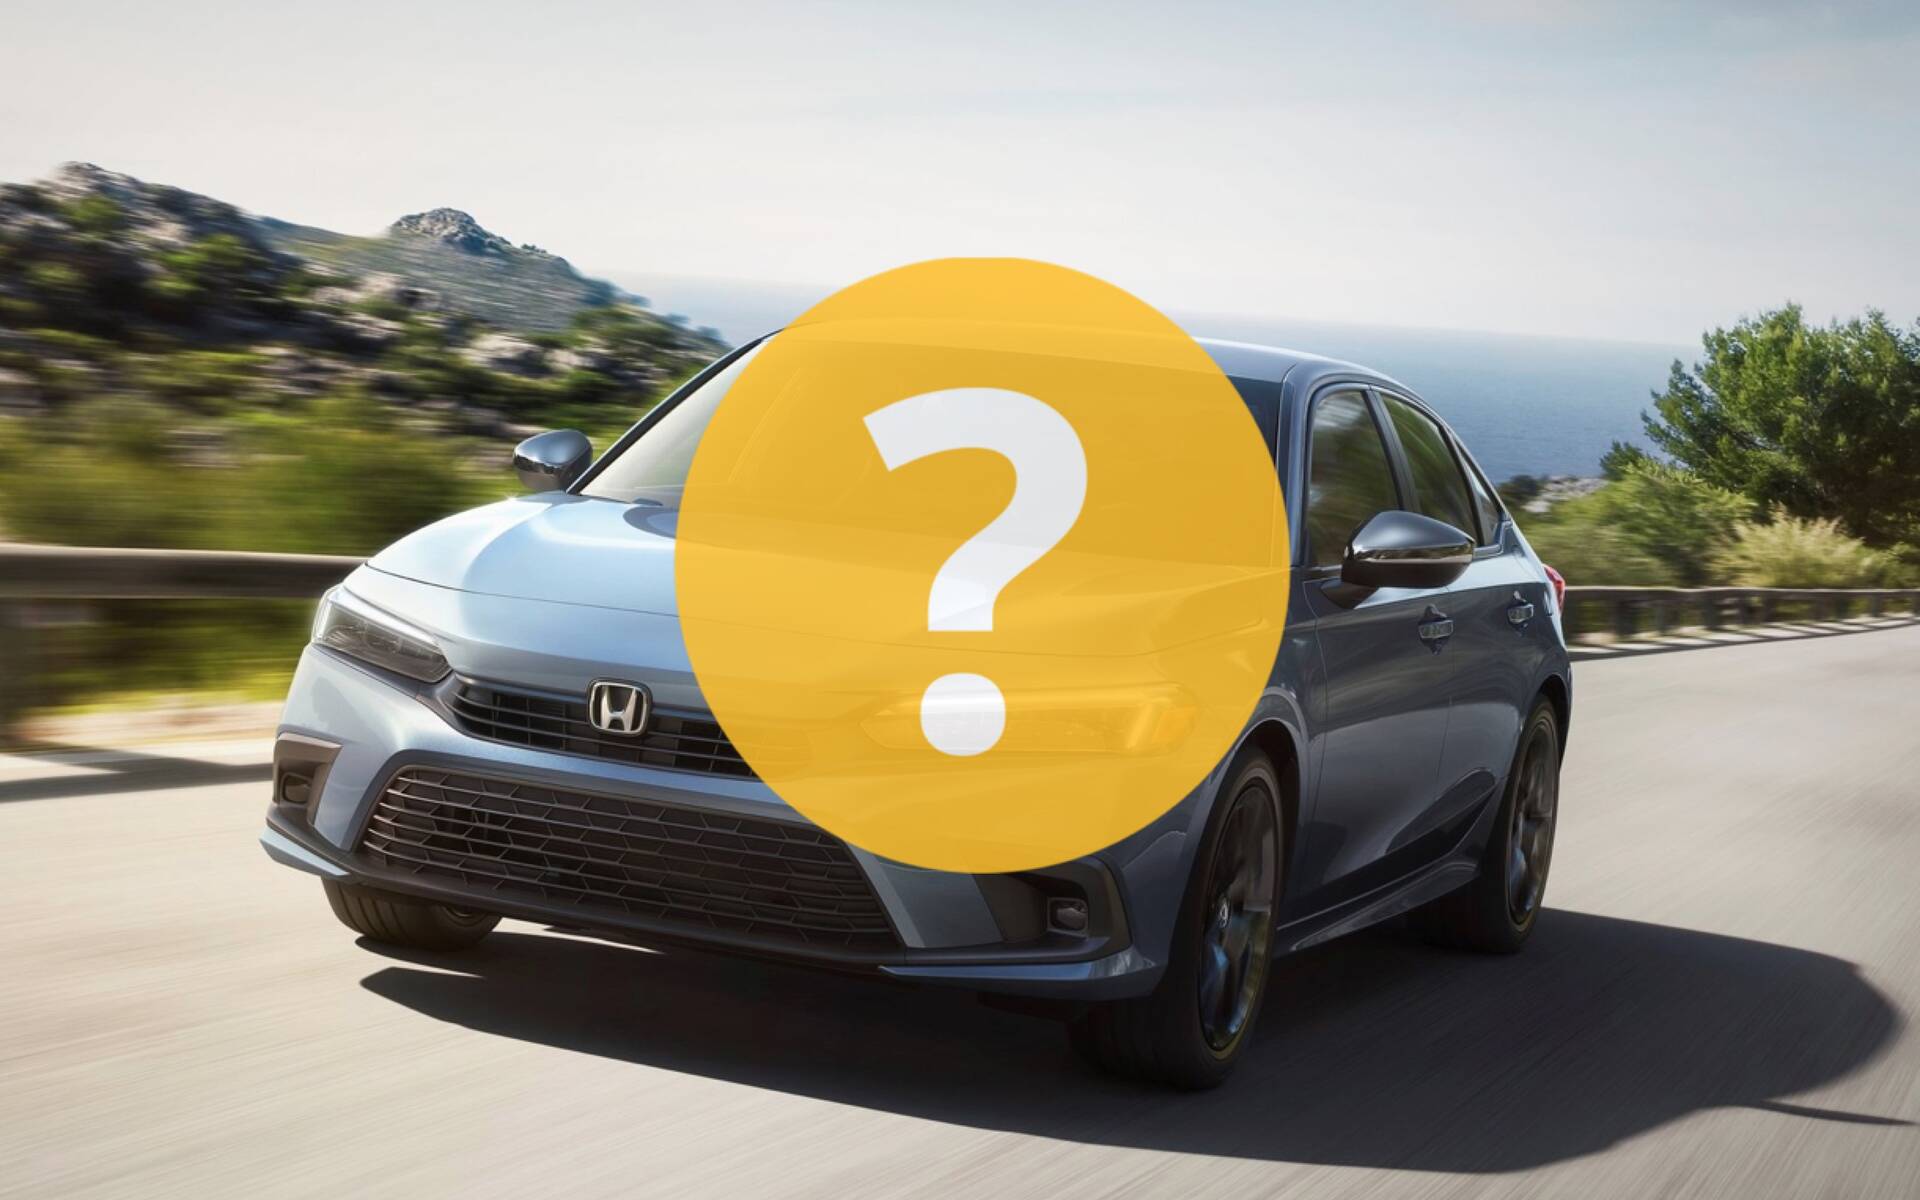 Que pensez-vous de la Honda Civic 2022?